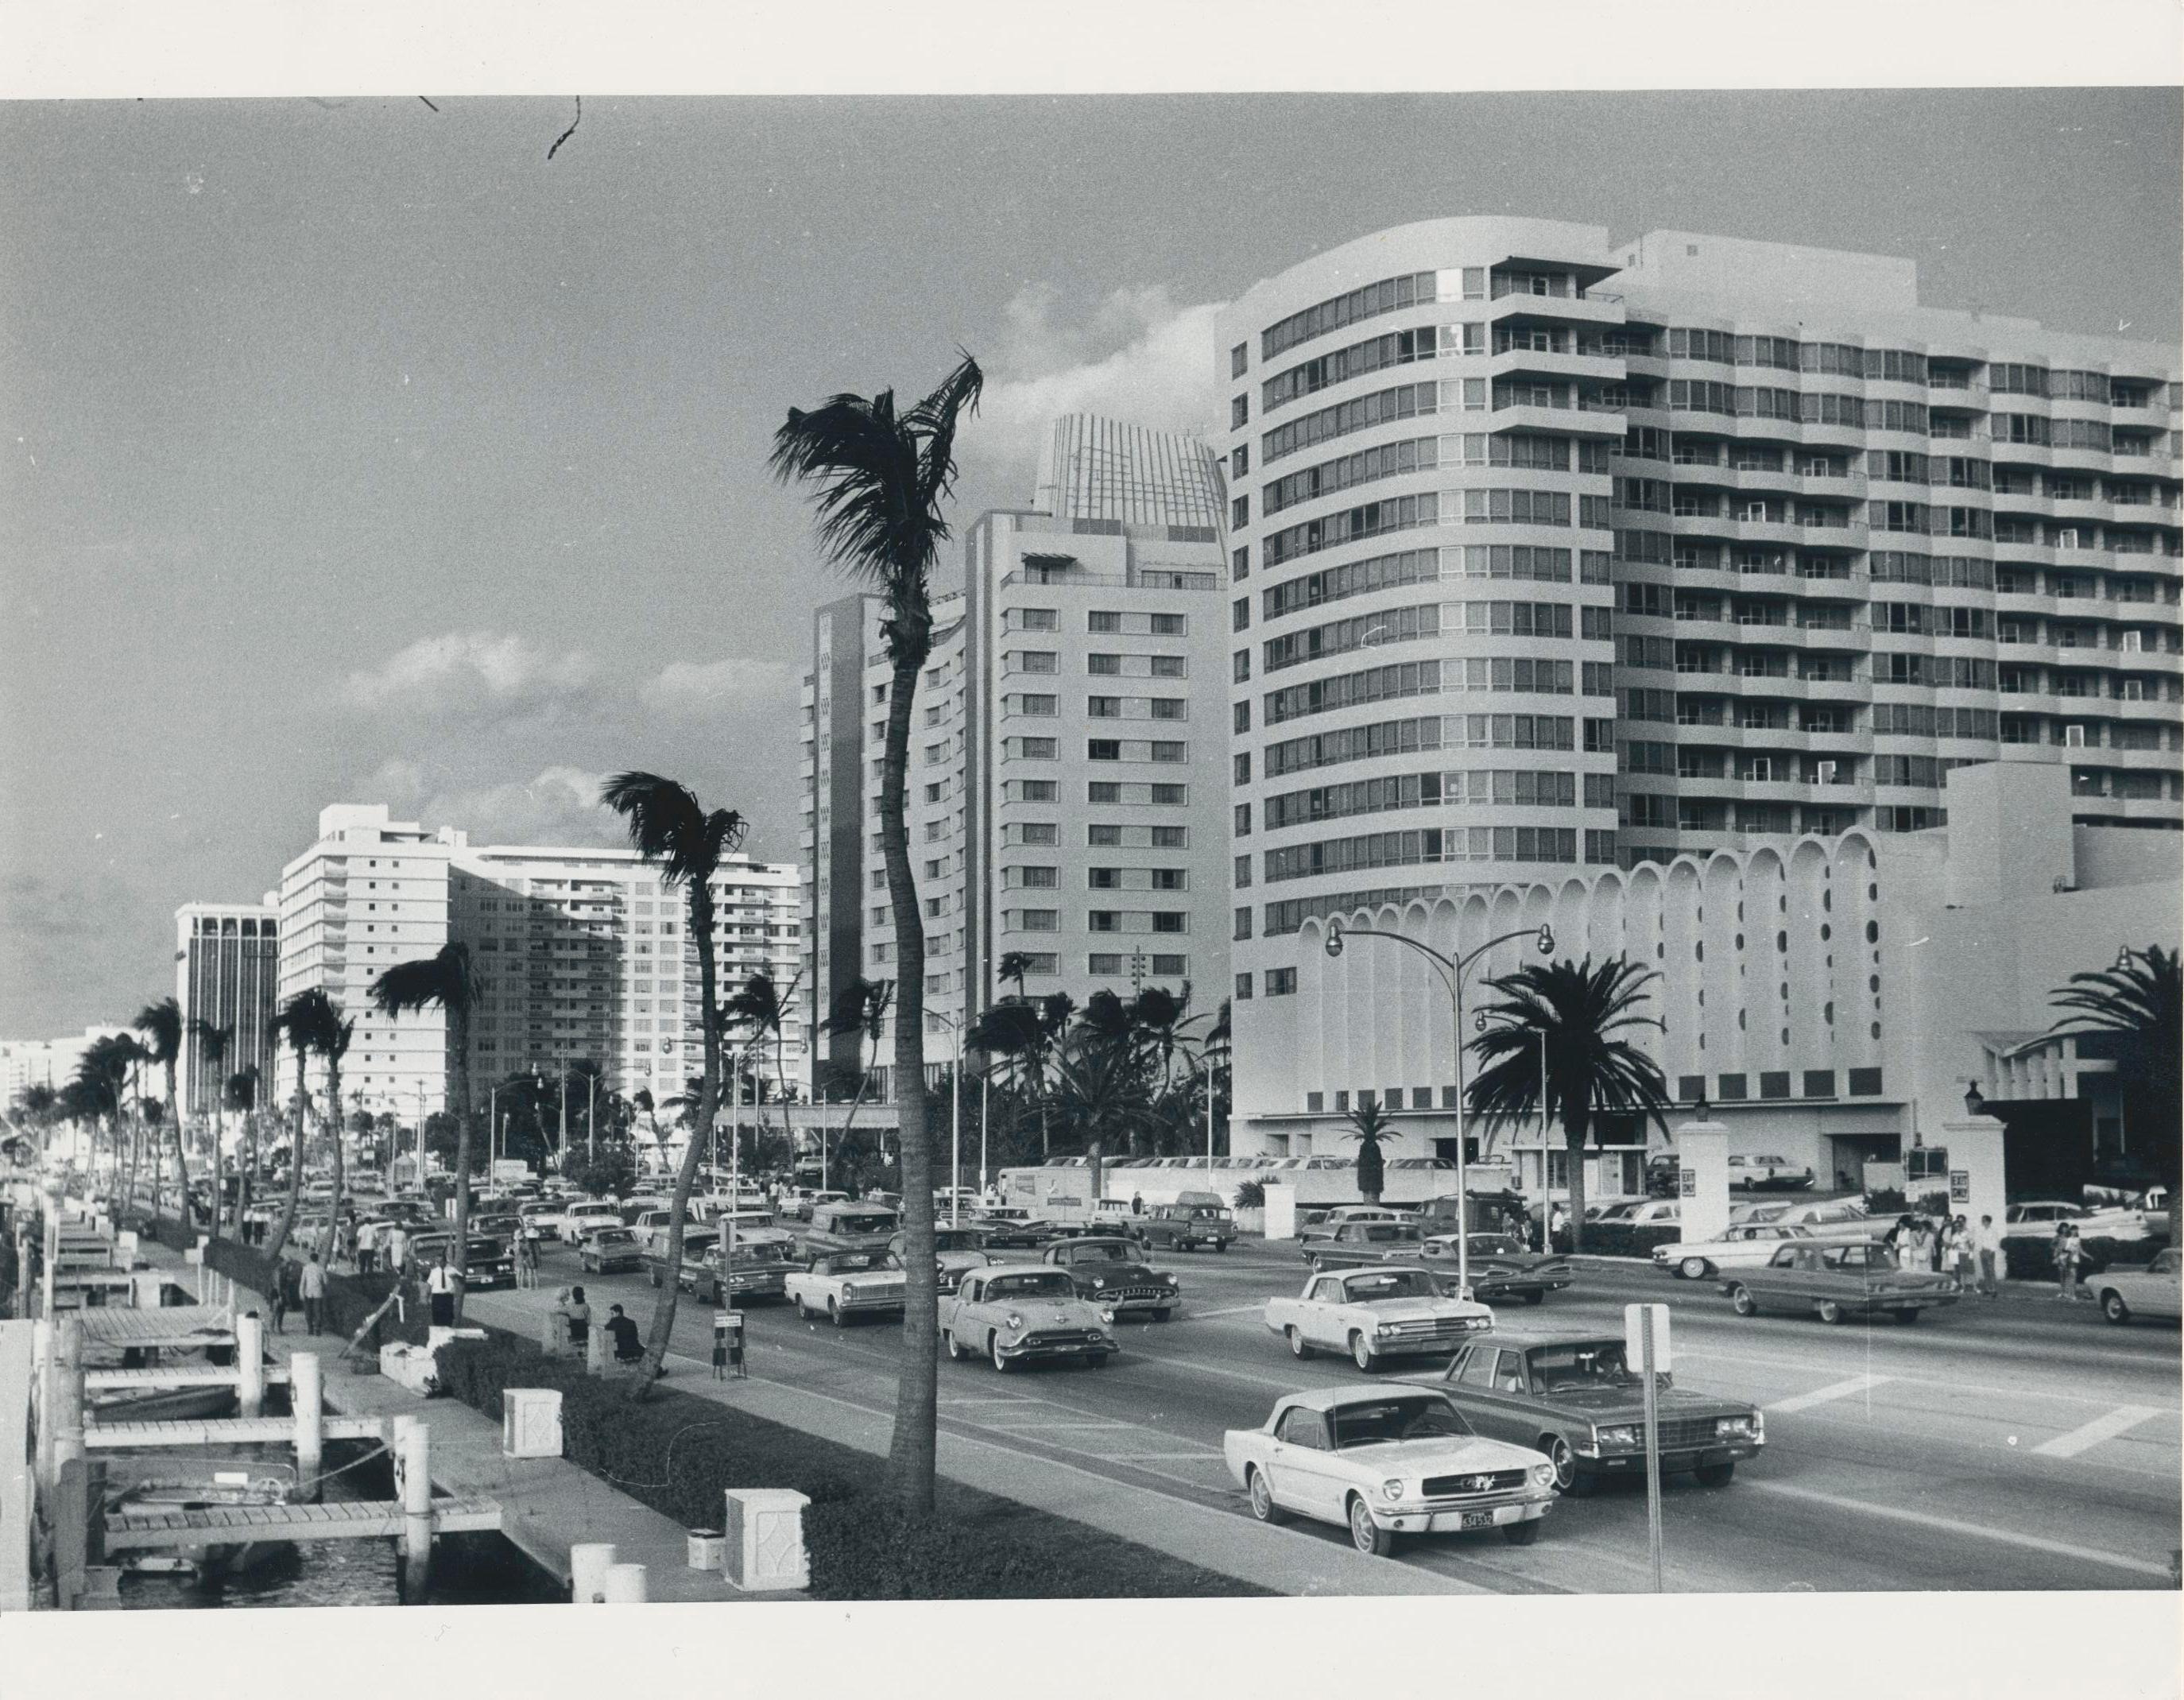 Erich Andres Black and White Photograph – Miami Beach, Straßenfotografie, Schwarz-Weiß, USA 1960er Jahre, 18,2 x 23,3 cm